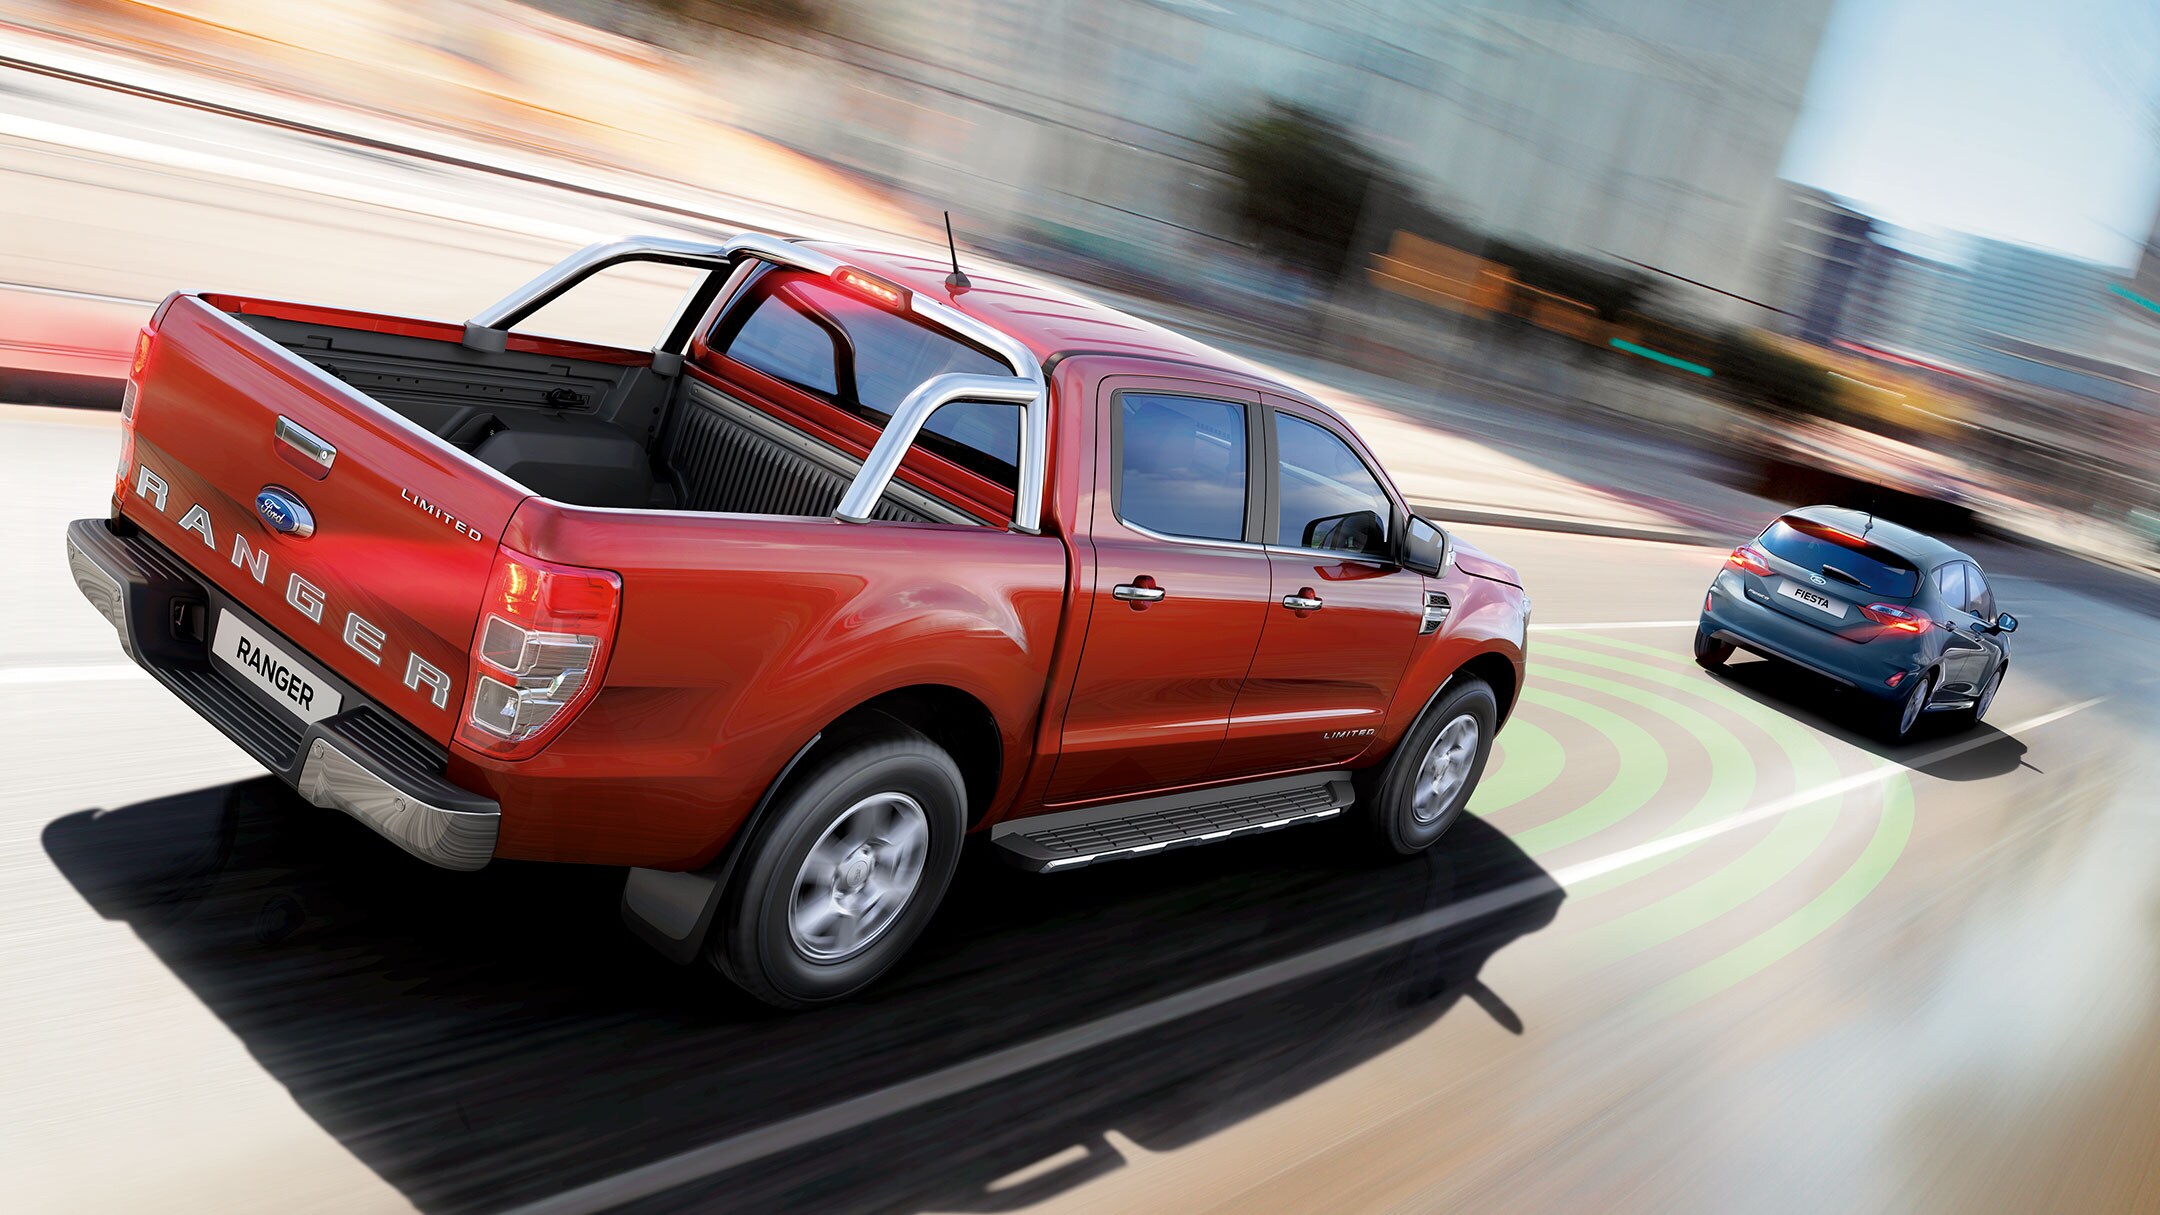 Ford Ranger Rot ¾-Heckansicht Sicherheits-Bremsassistent Illustration